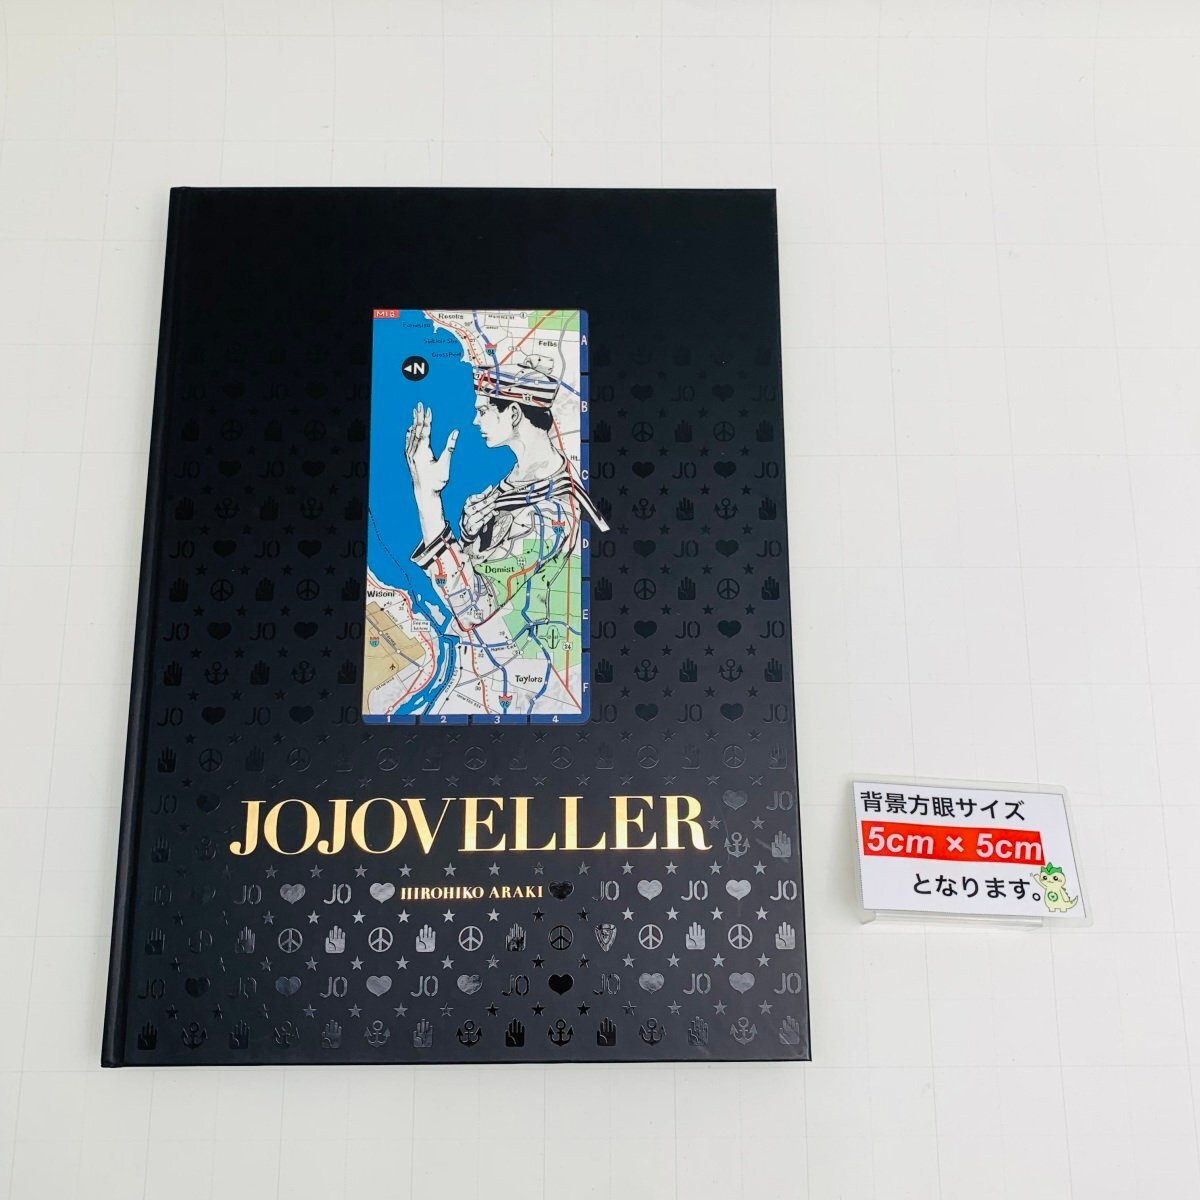 難あり中古品 集英社 ジョジョの奇妙な冒険 JOJOVELLER 完全限定版の画像2